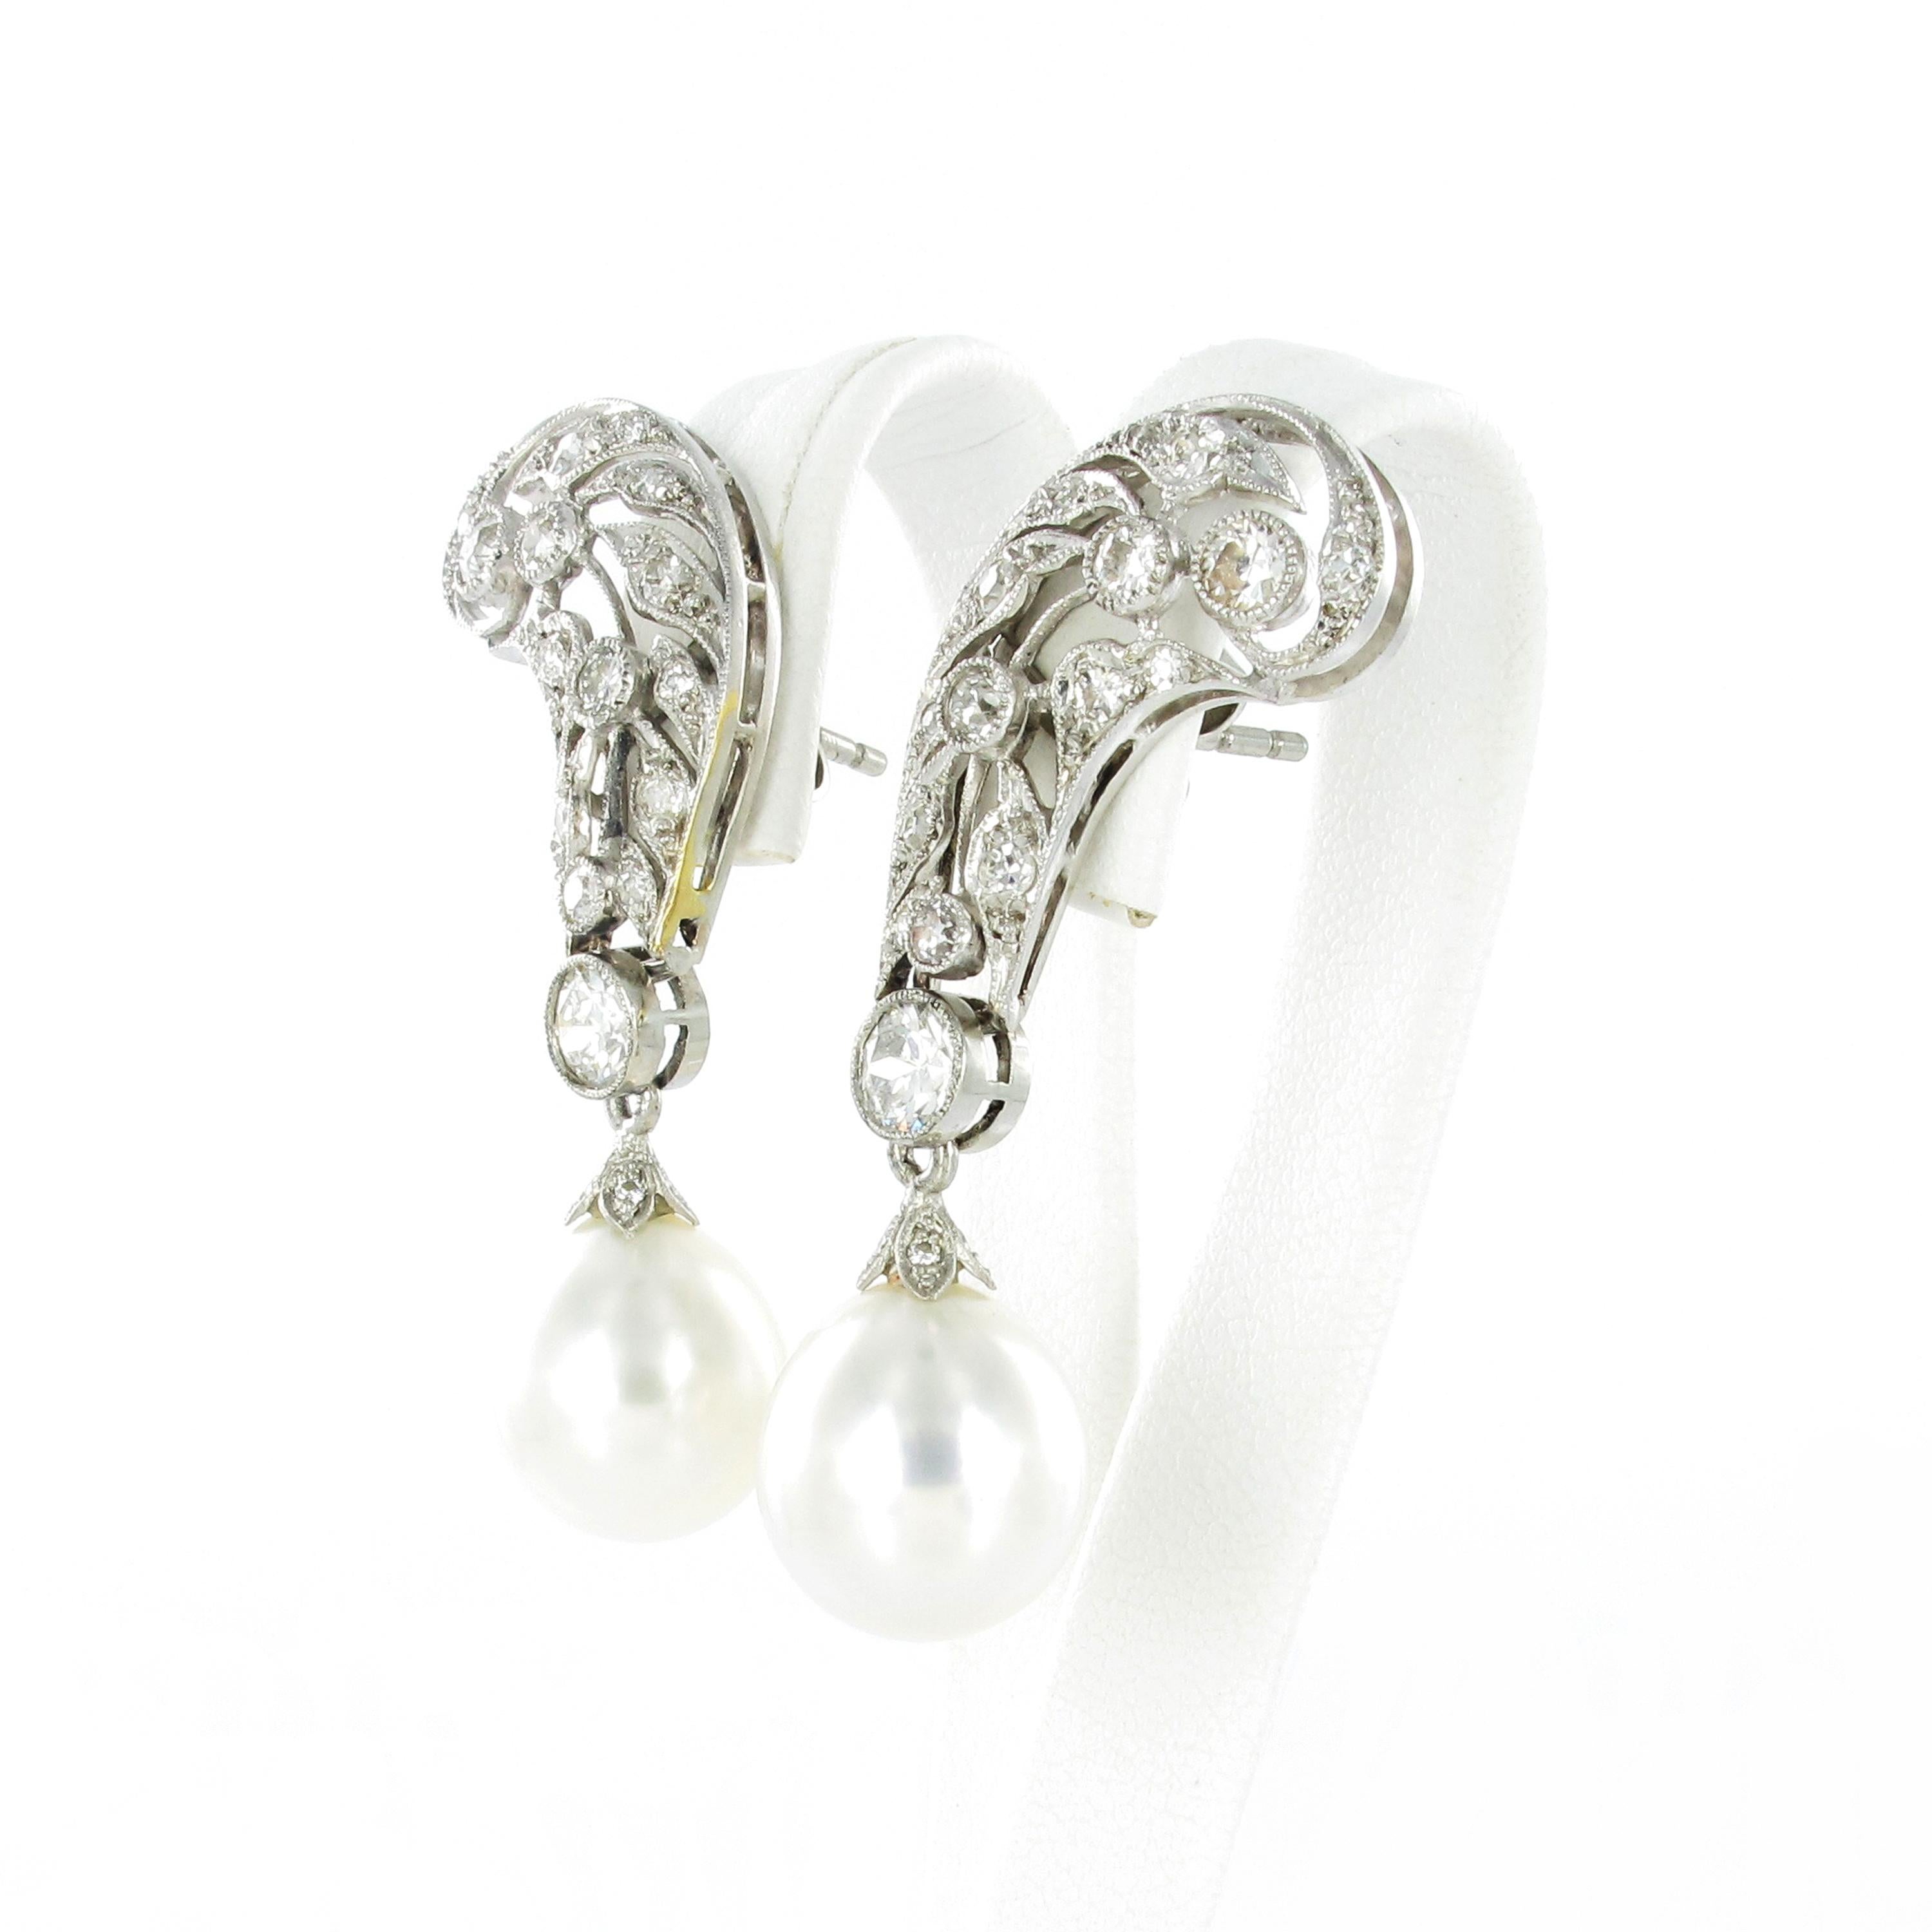 Stabiles Paar Ohrringe aus Platin 950. Das Paar stammt ungefähr aus den 1940er Jahren und ist sehr schön gearbeitet. Millgraine, besetzt mit 60 Diamanten im Altschliff von insgesamt ca. 2 ct. Die Diamanten haben die Farbe G/H und die Reinheit